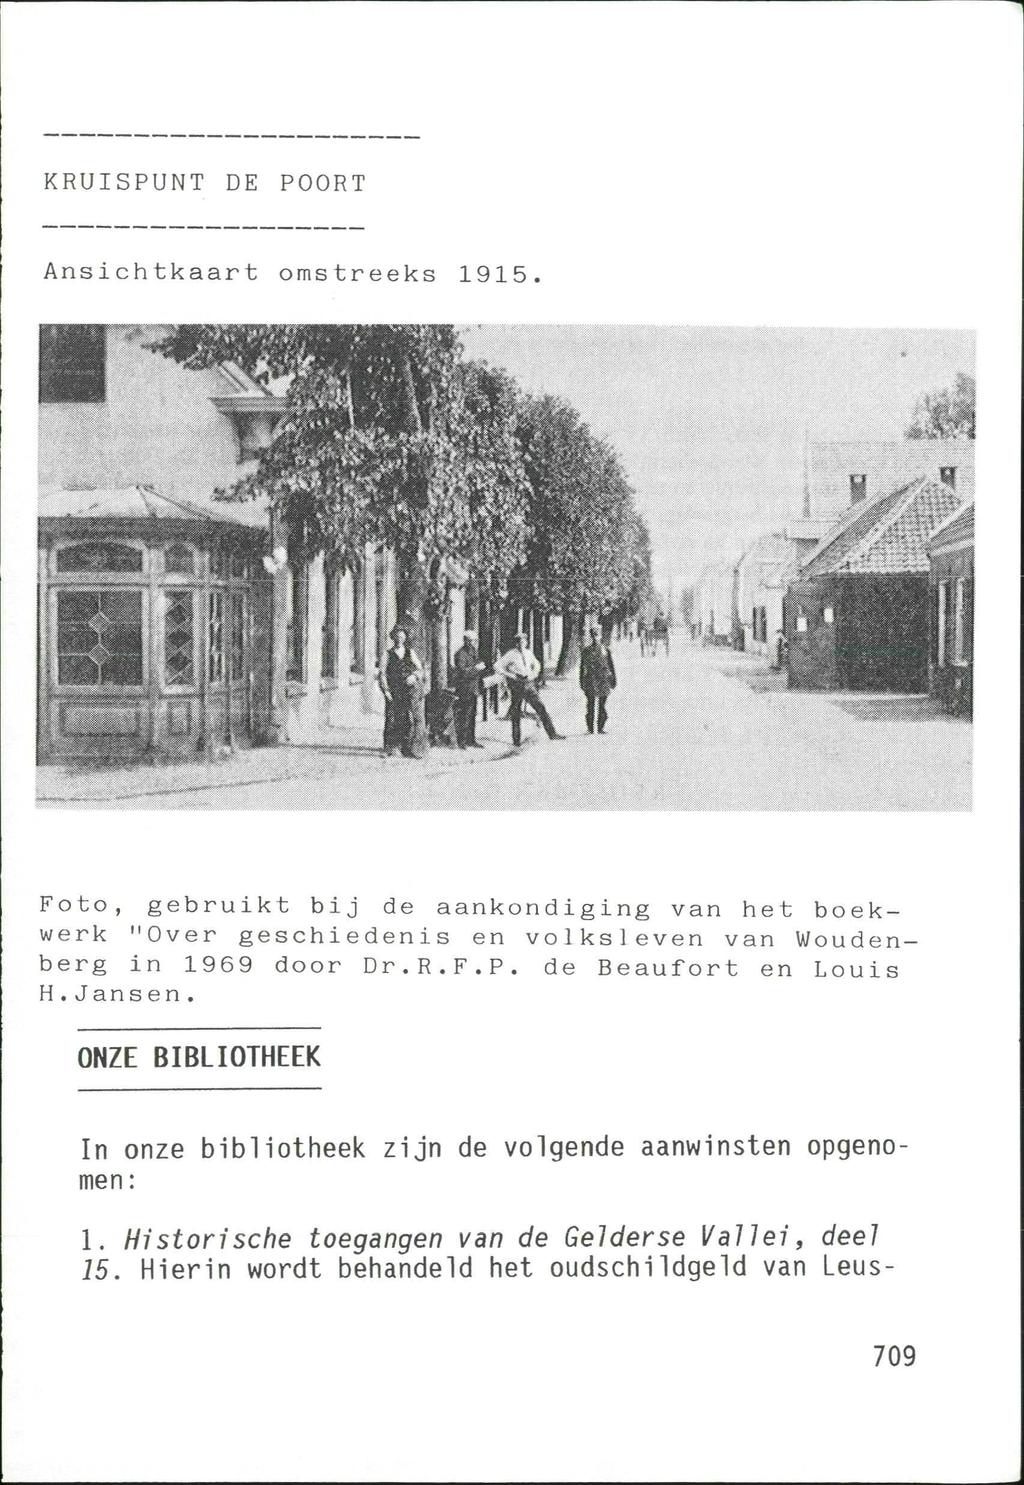 KRUISPUNT DE POORT Ansichtkaart omstreeks 1915 Foto, gebruikt bij de aankondiging van het boekwerk "Over geschiedenis en volksleven van Woudenberg in 1969 door Dr.R.F.P. de Beaufort en Louis H.